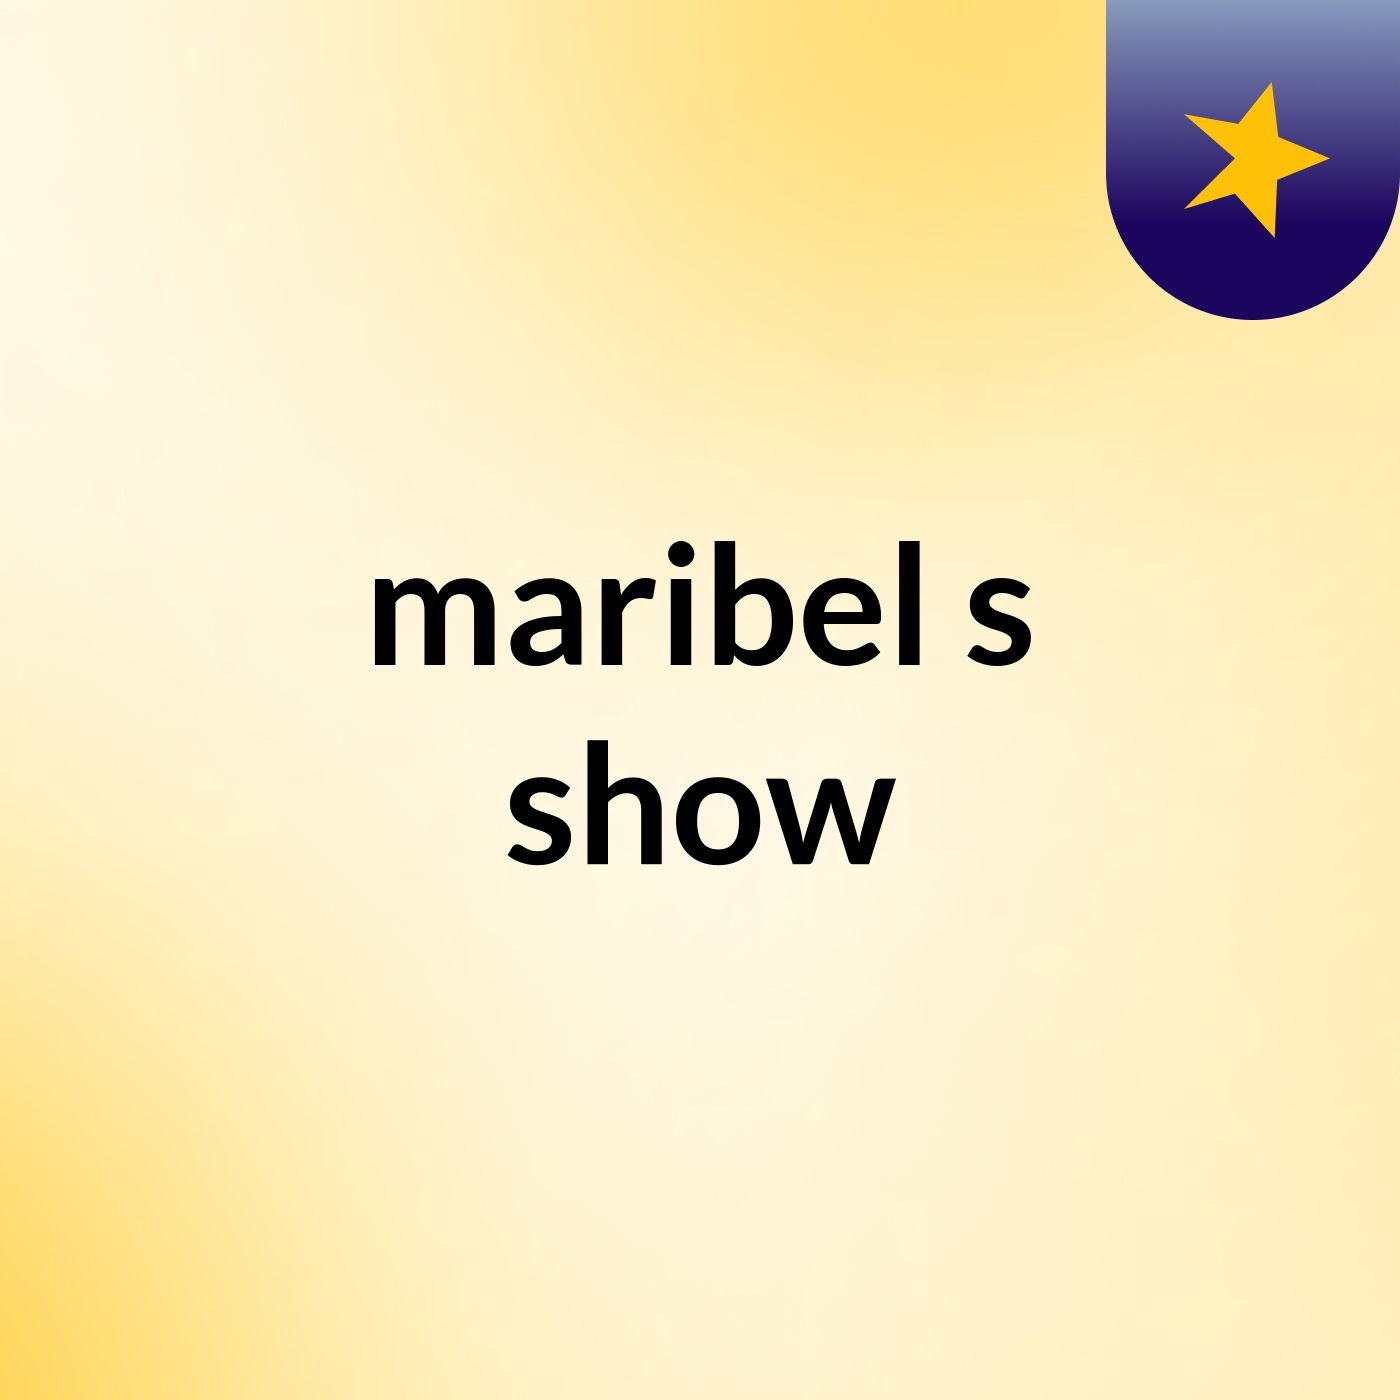 maribel's show